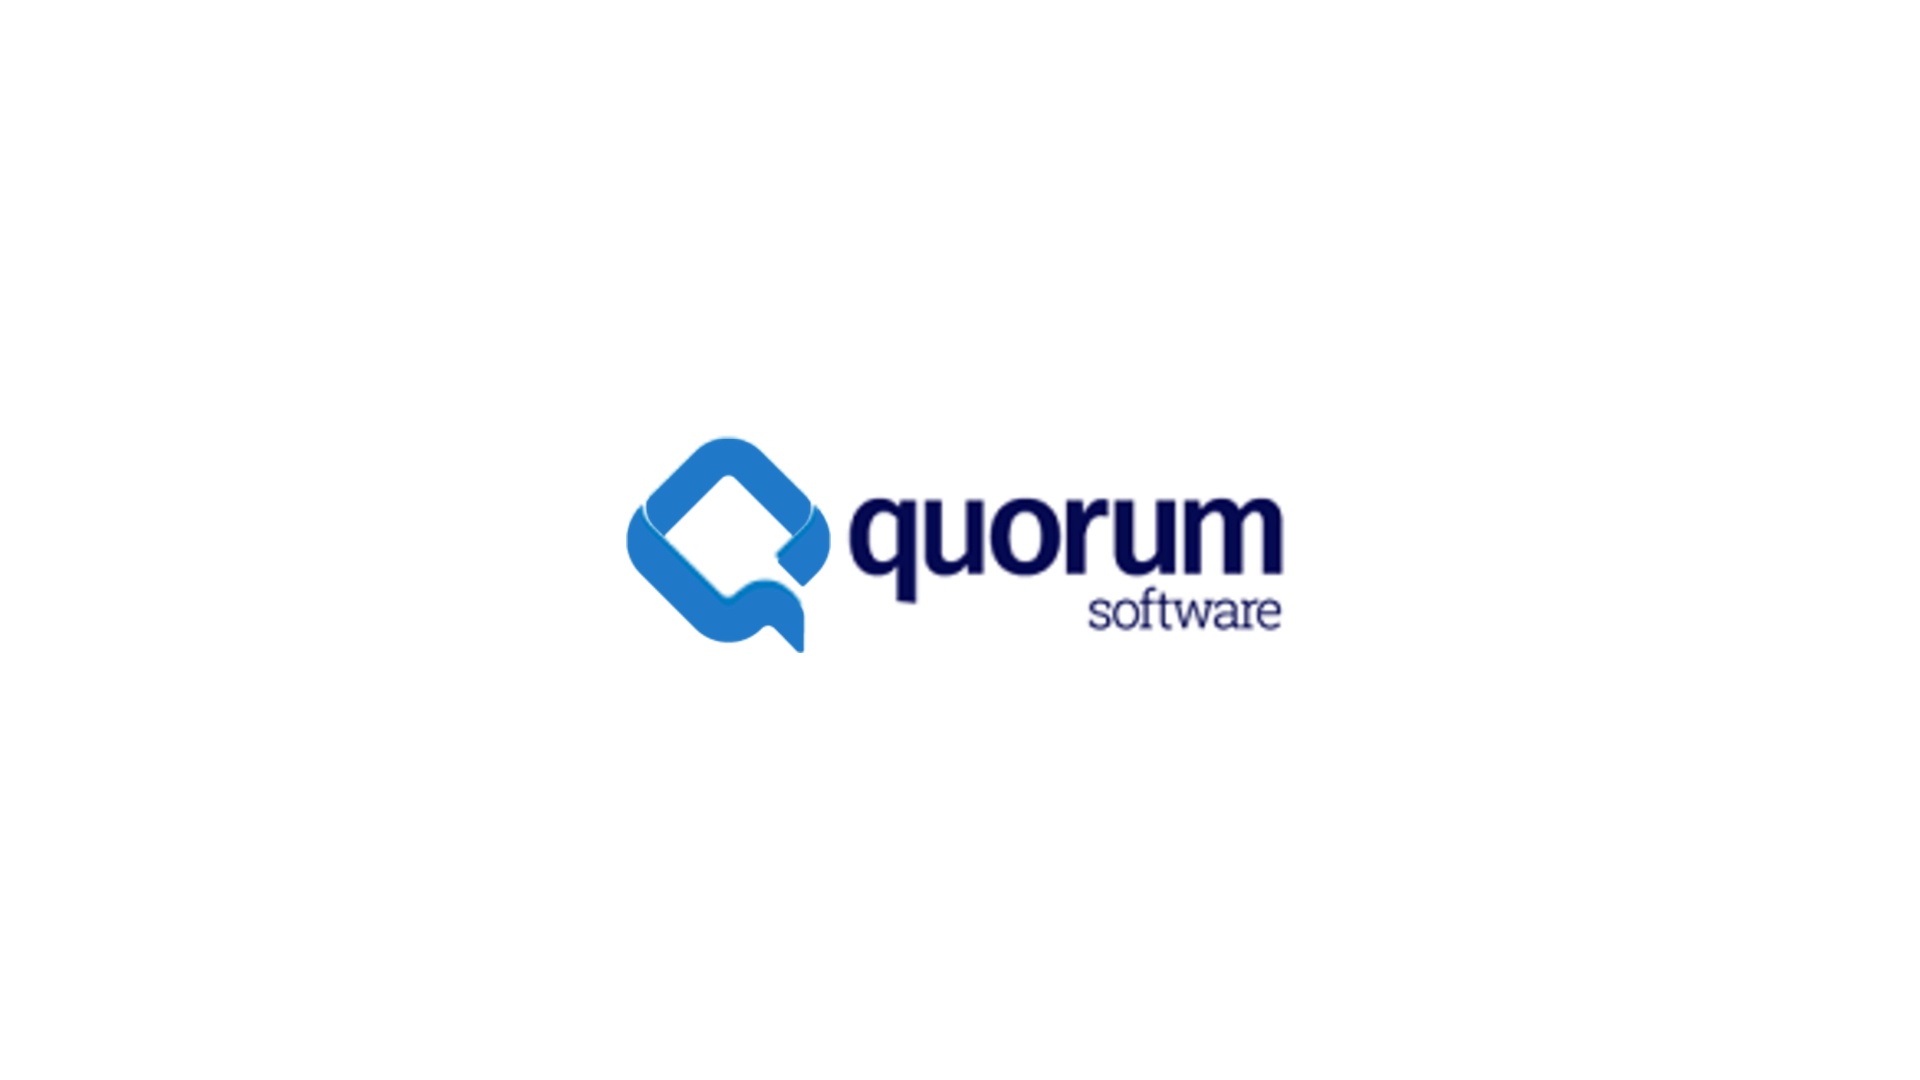 Quorum Software Acquires Archeio Technologies